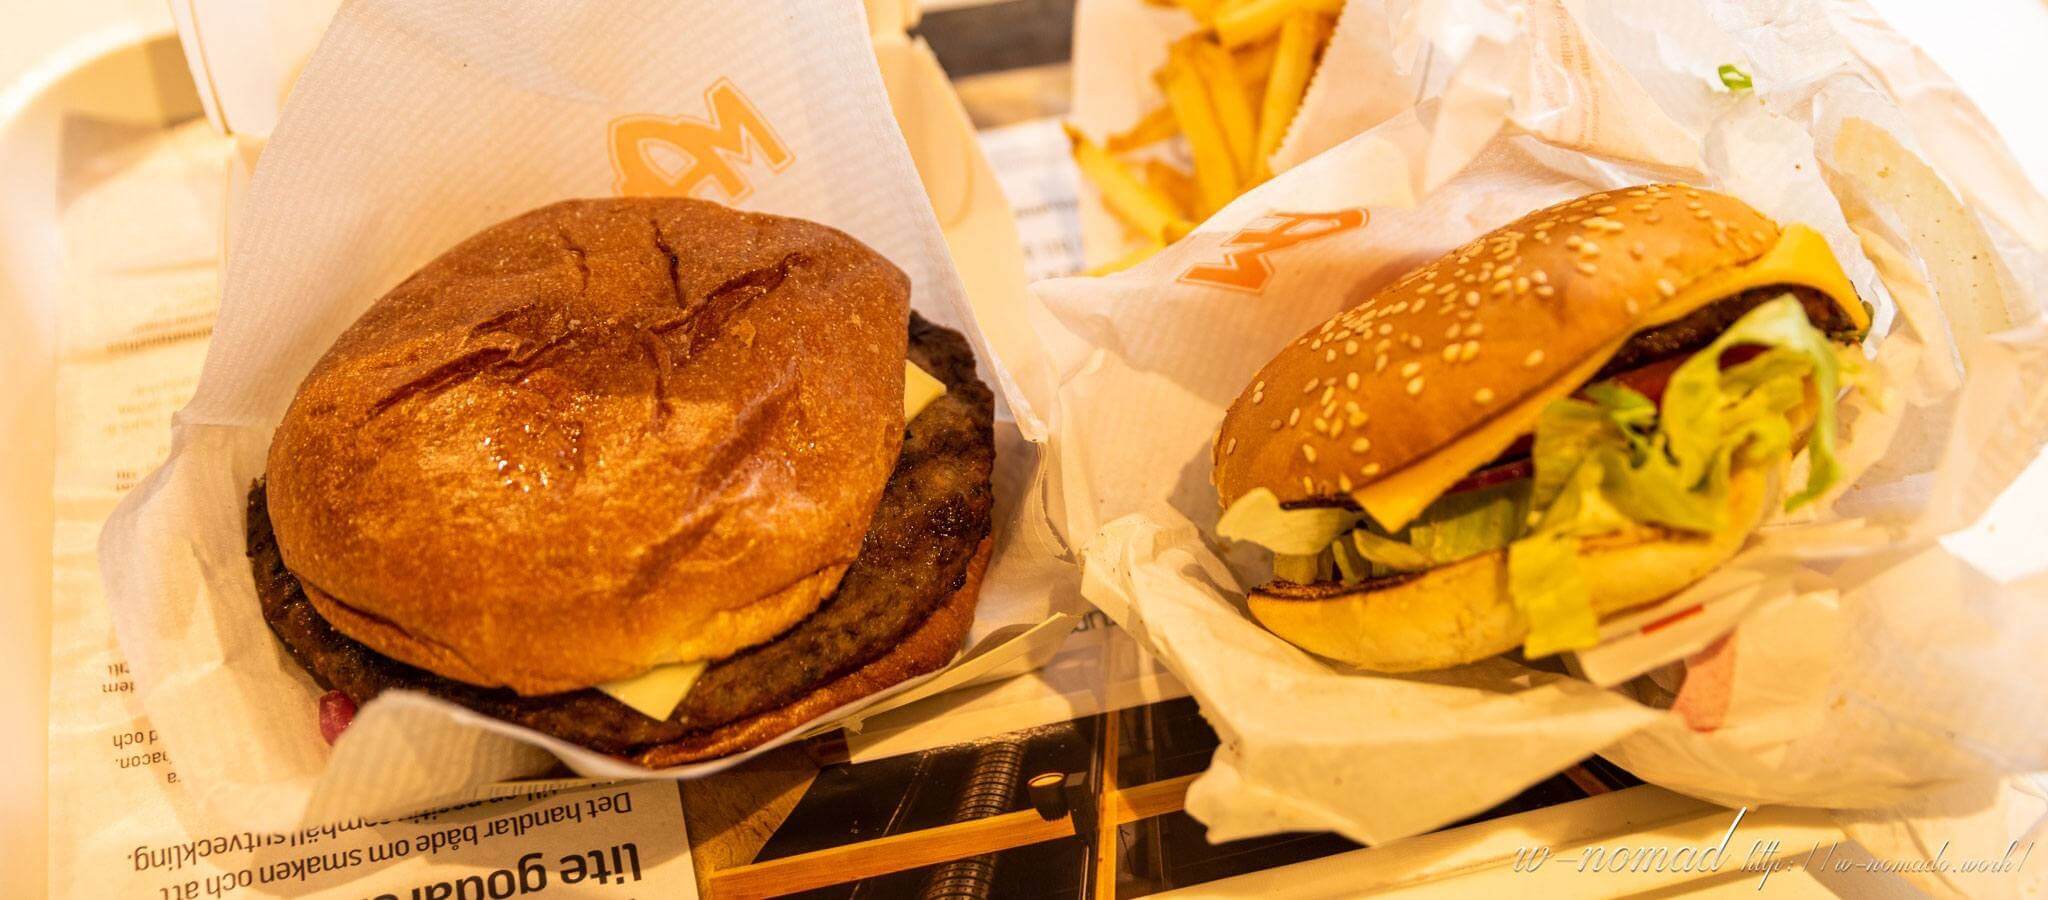 【絶品】スウェーデン発祥のMAXハンバーガーが忘れられない美味しさだった件【ローカルフード】